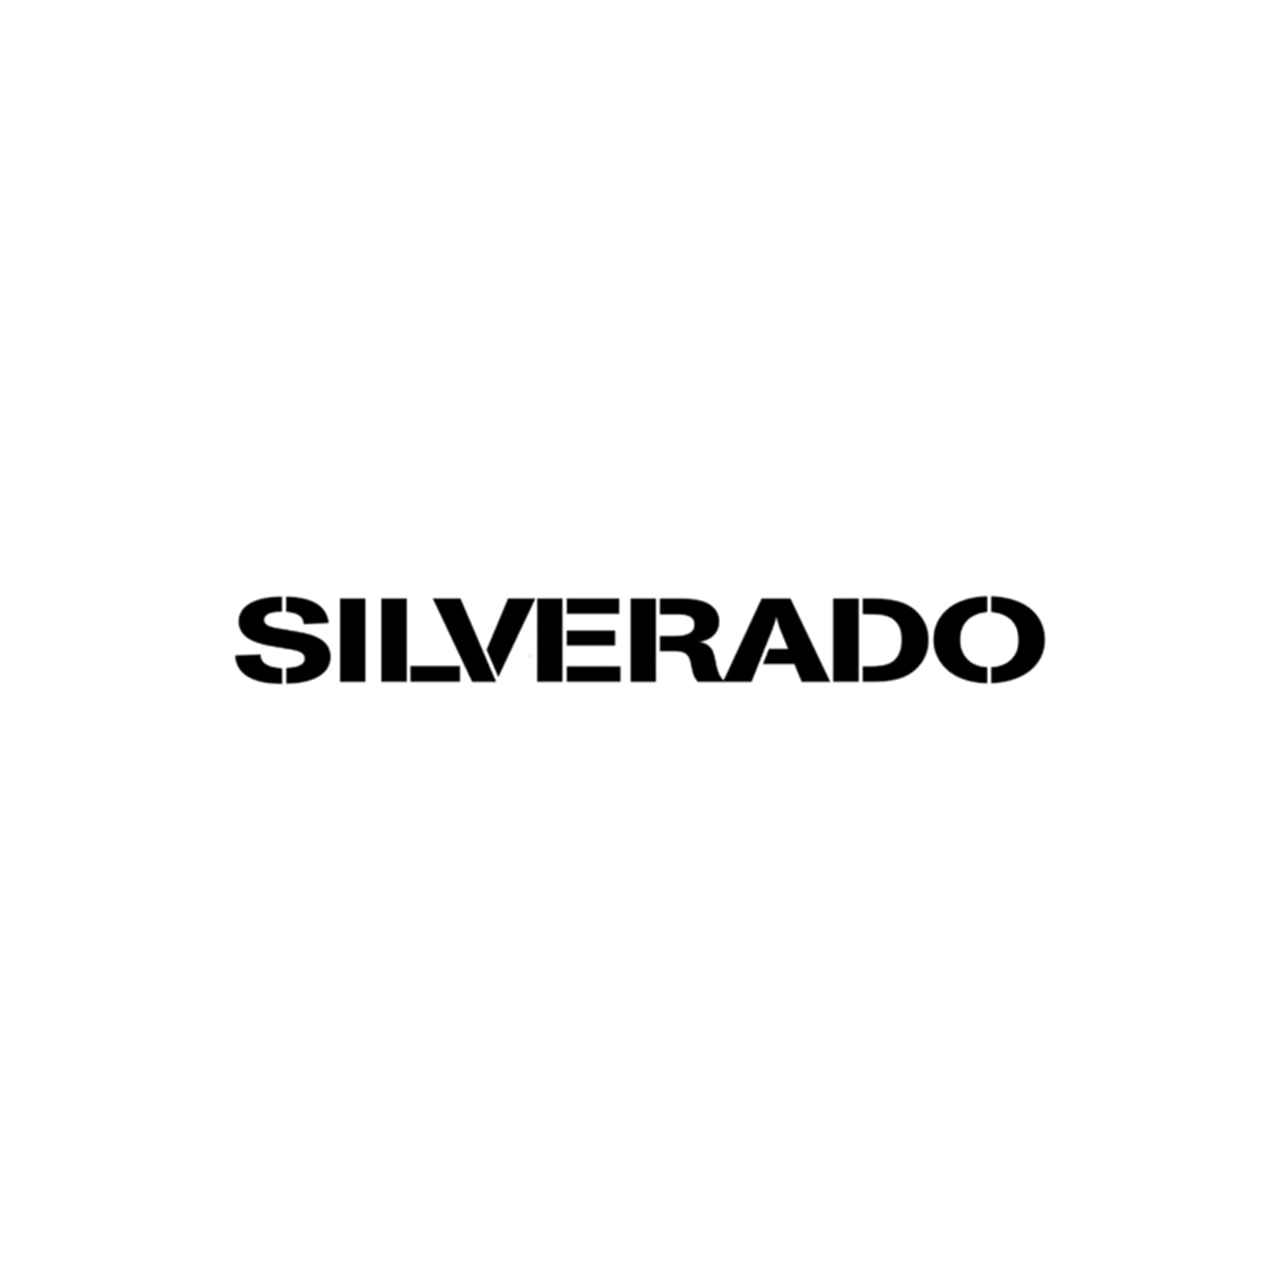 Silverado Logo - Chevrolet Silverado Logo Vinyl Decal